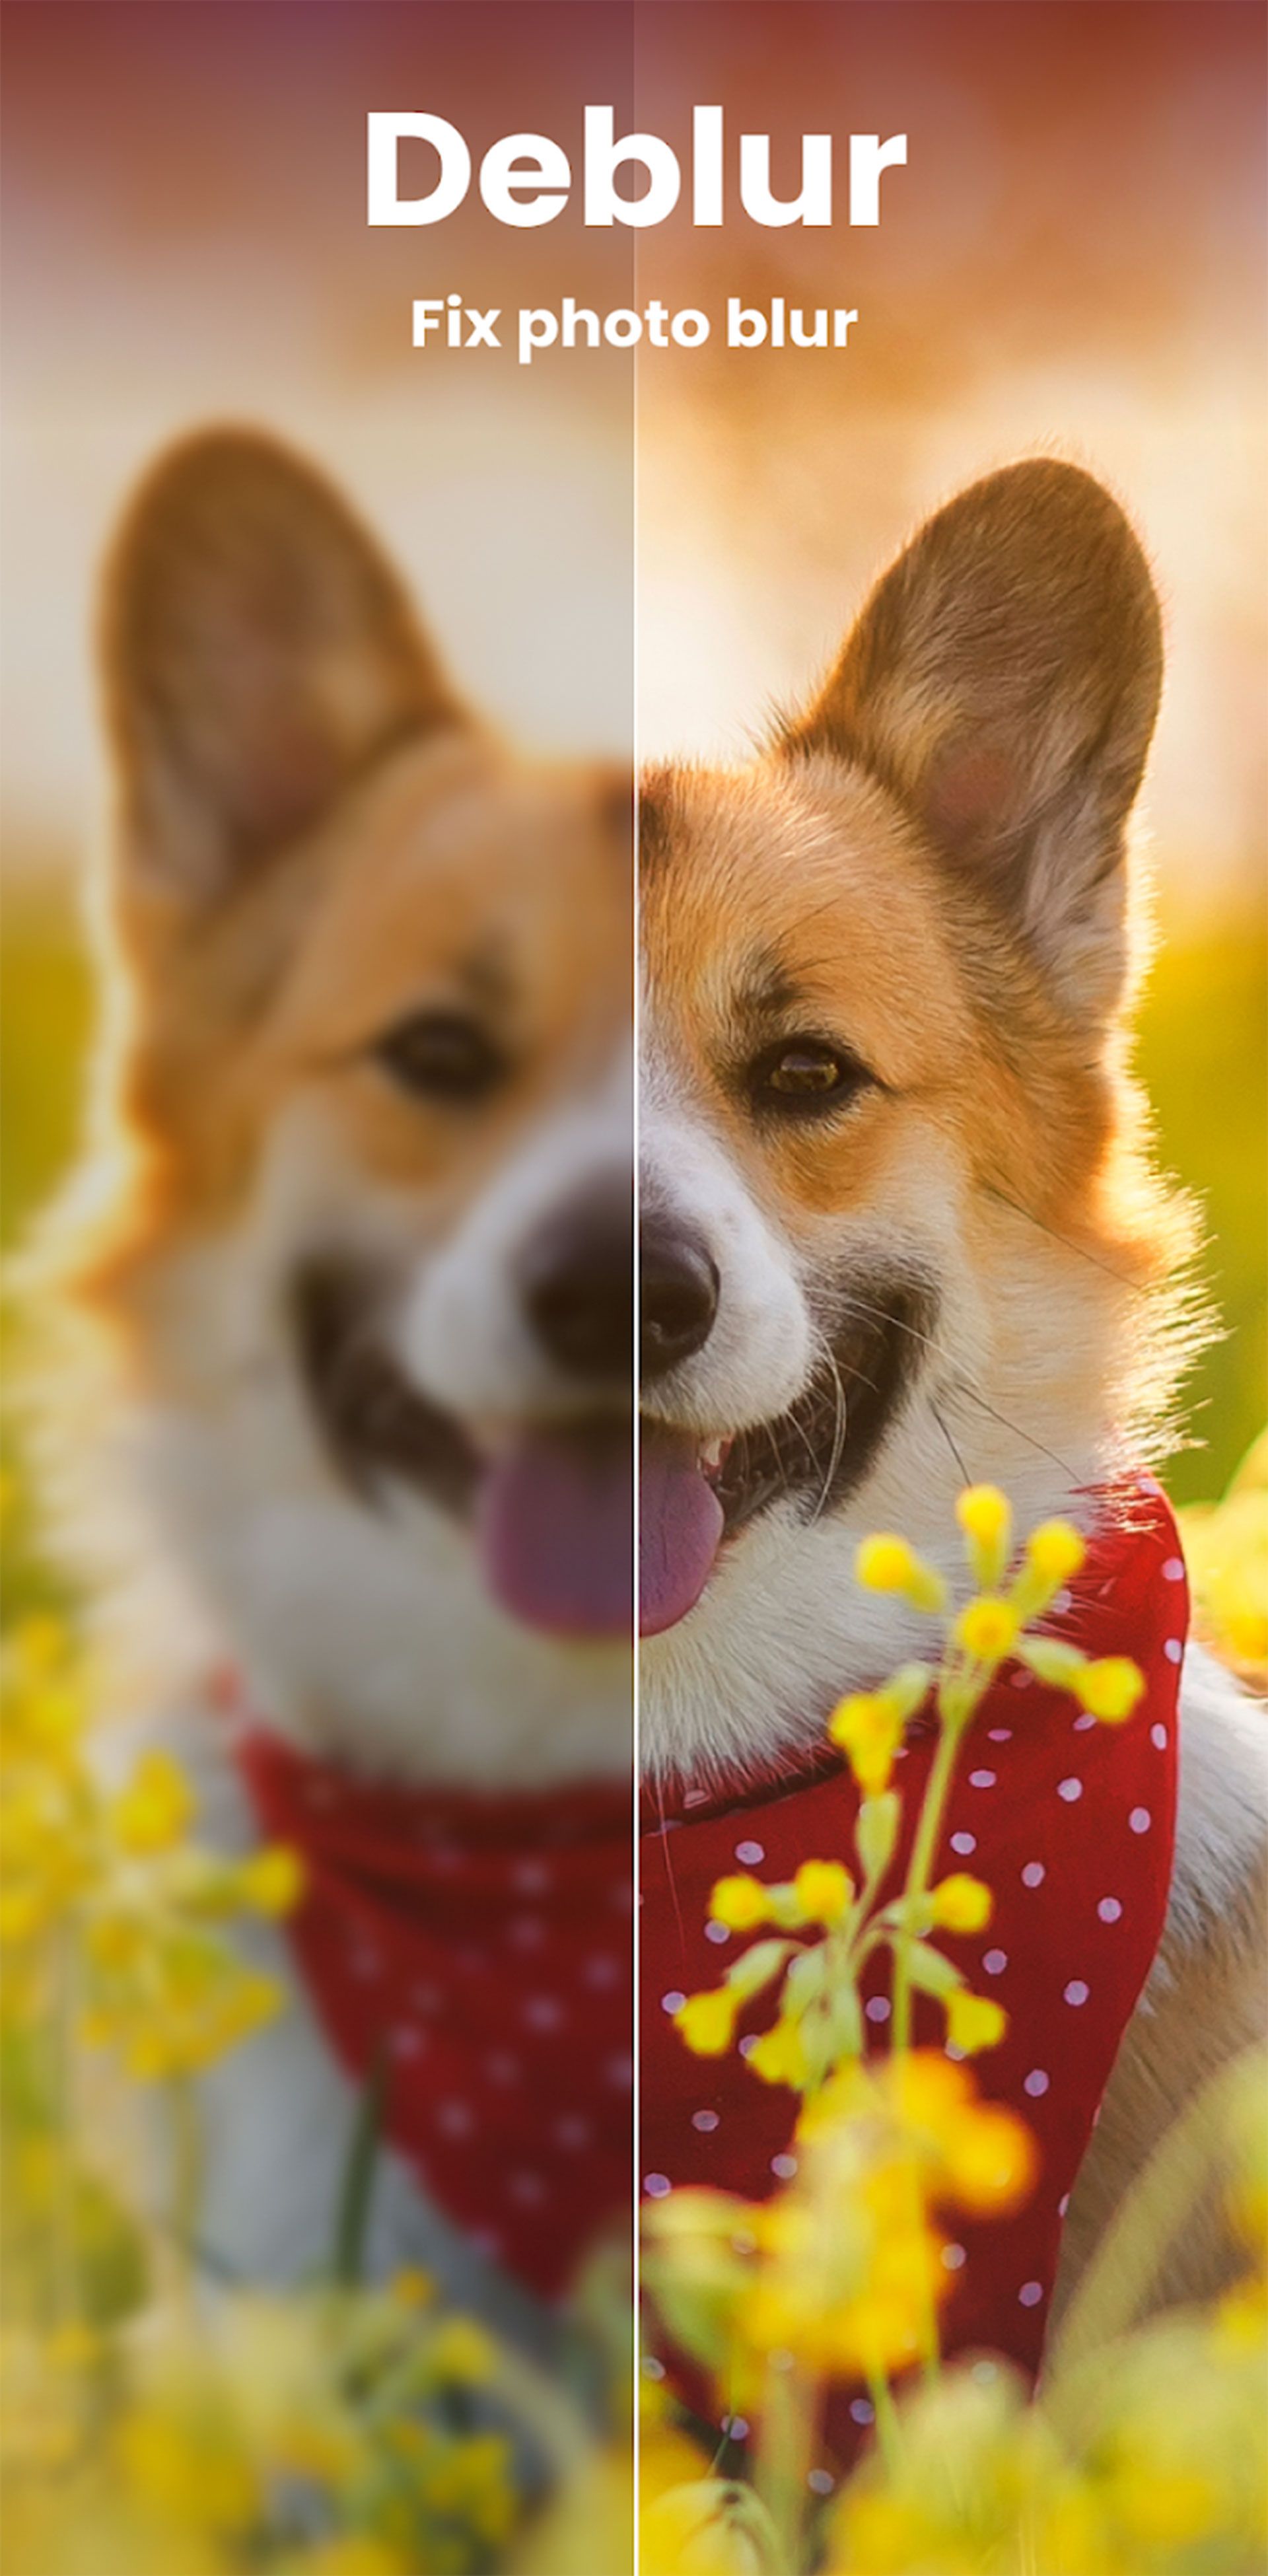 مرجع متخصصين ايران سگي خندان در باغ گل در حال نگاه كردن به دوربين